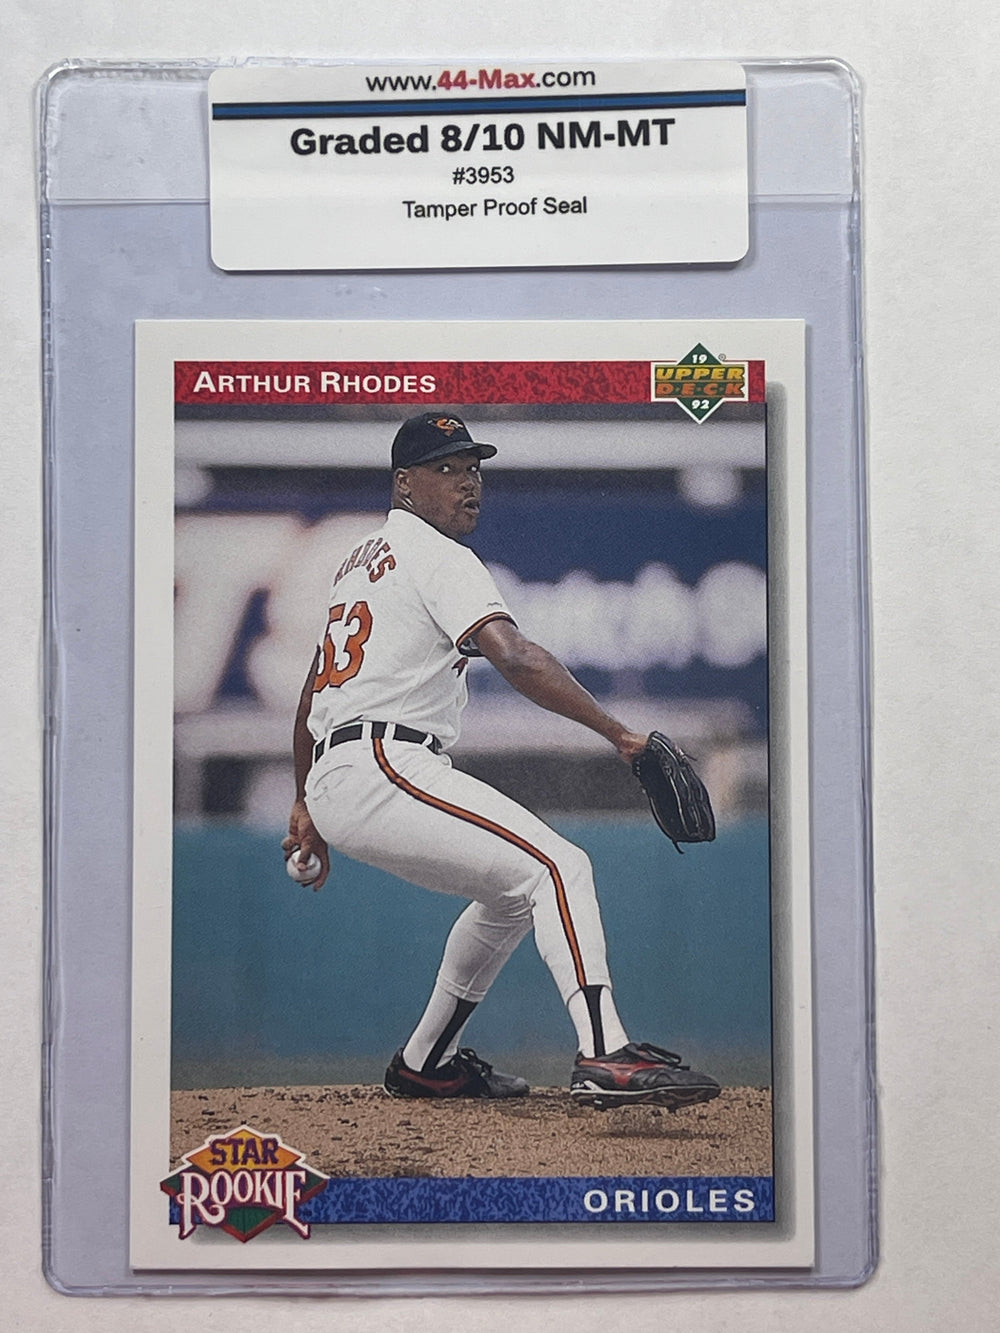 Arthur Rhodes 1992 Upper Deck Baseball Card. 44-Max 8/10 NM-MT #3953